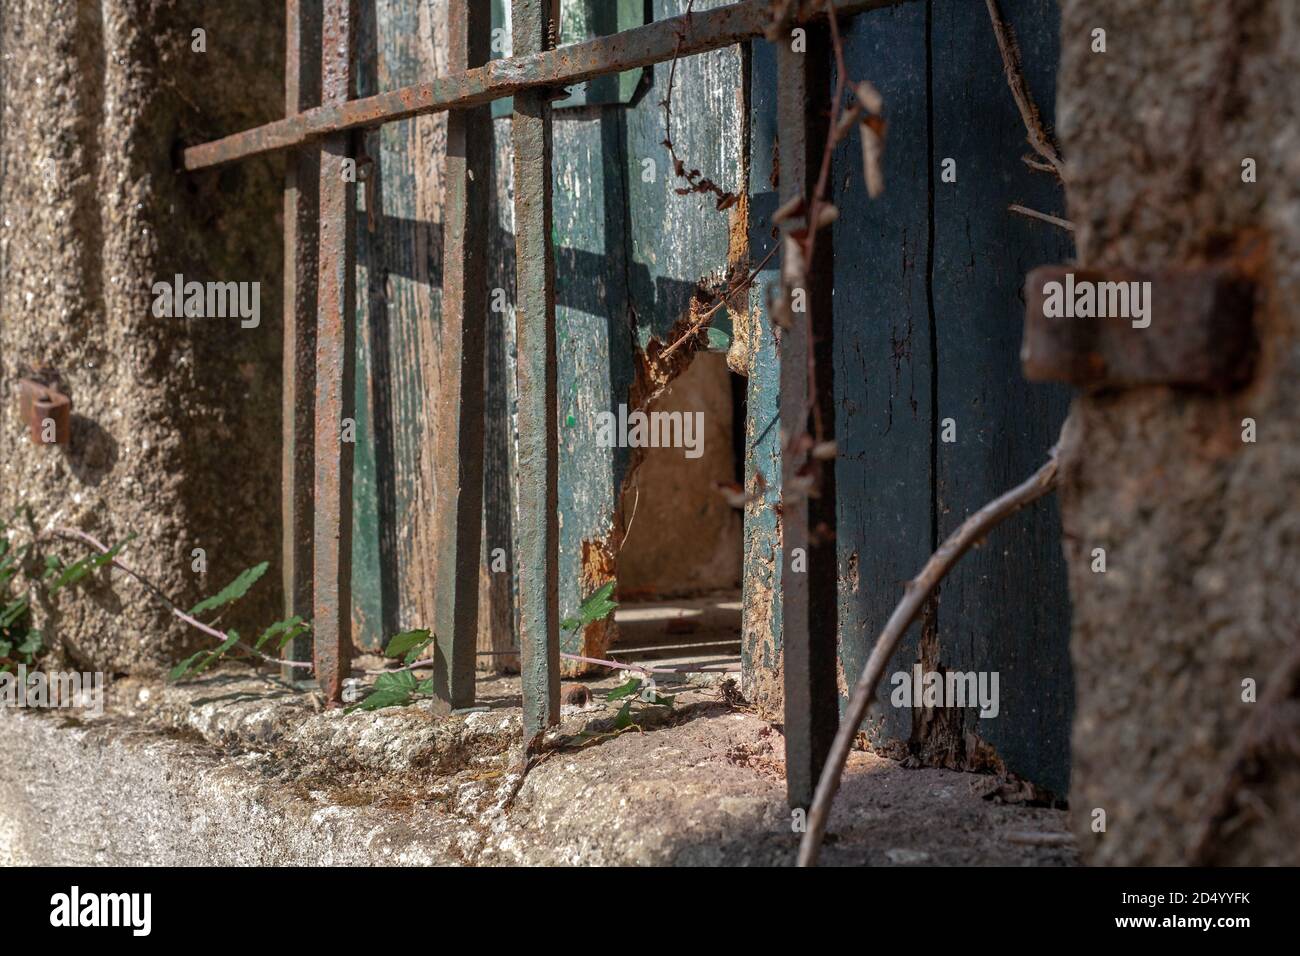 Fenêtre en bois espagnol cassé et usé avec des barres de métal rouillé le recouvrant d'un mur en pierre. Banque D'Images